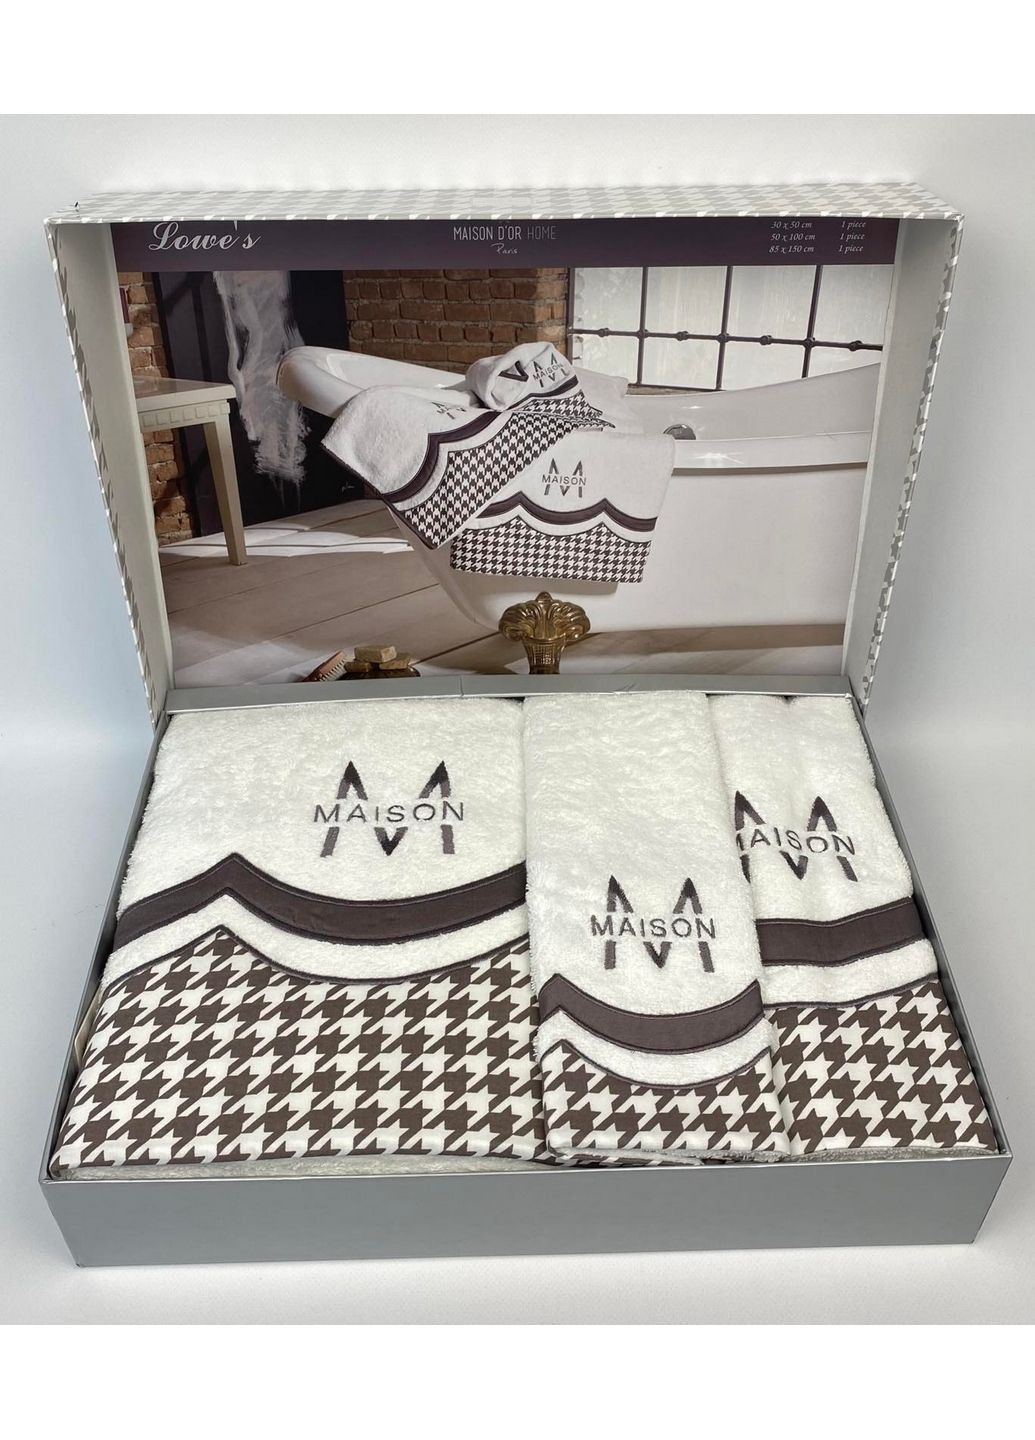 Maison D'or комплект полотенец (3 штуки) комбинированный производство - Турция